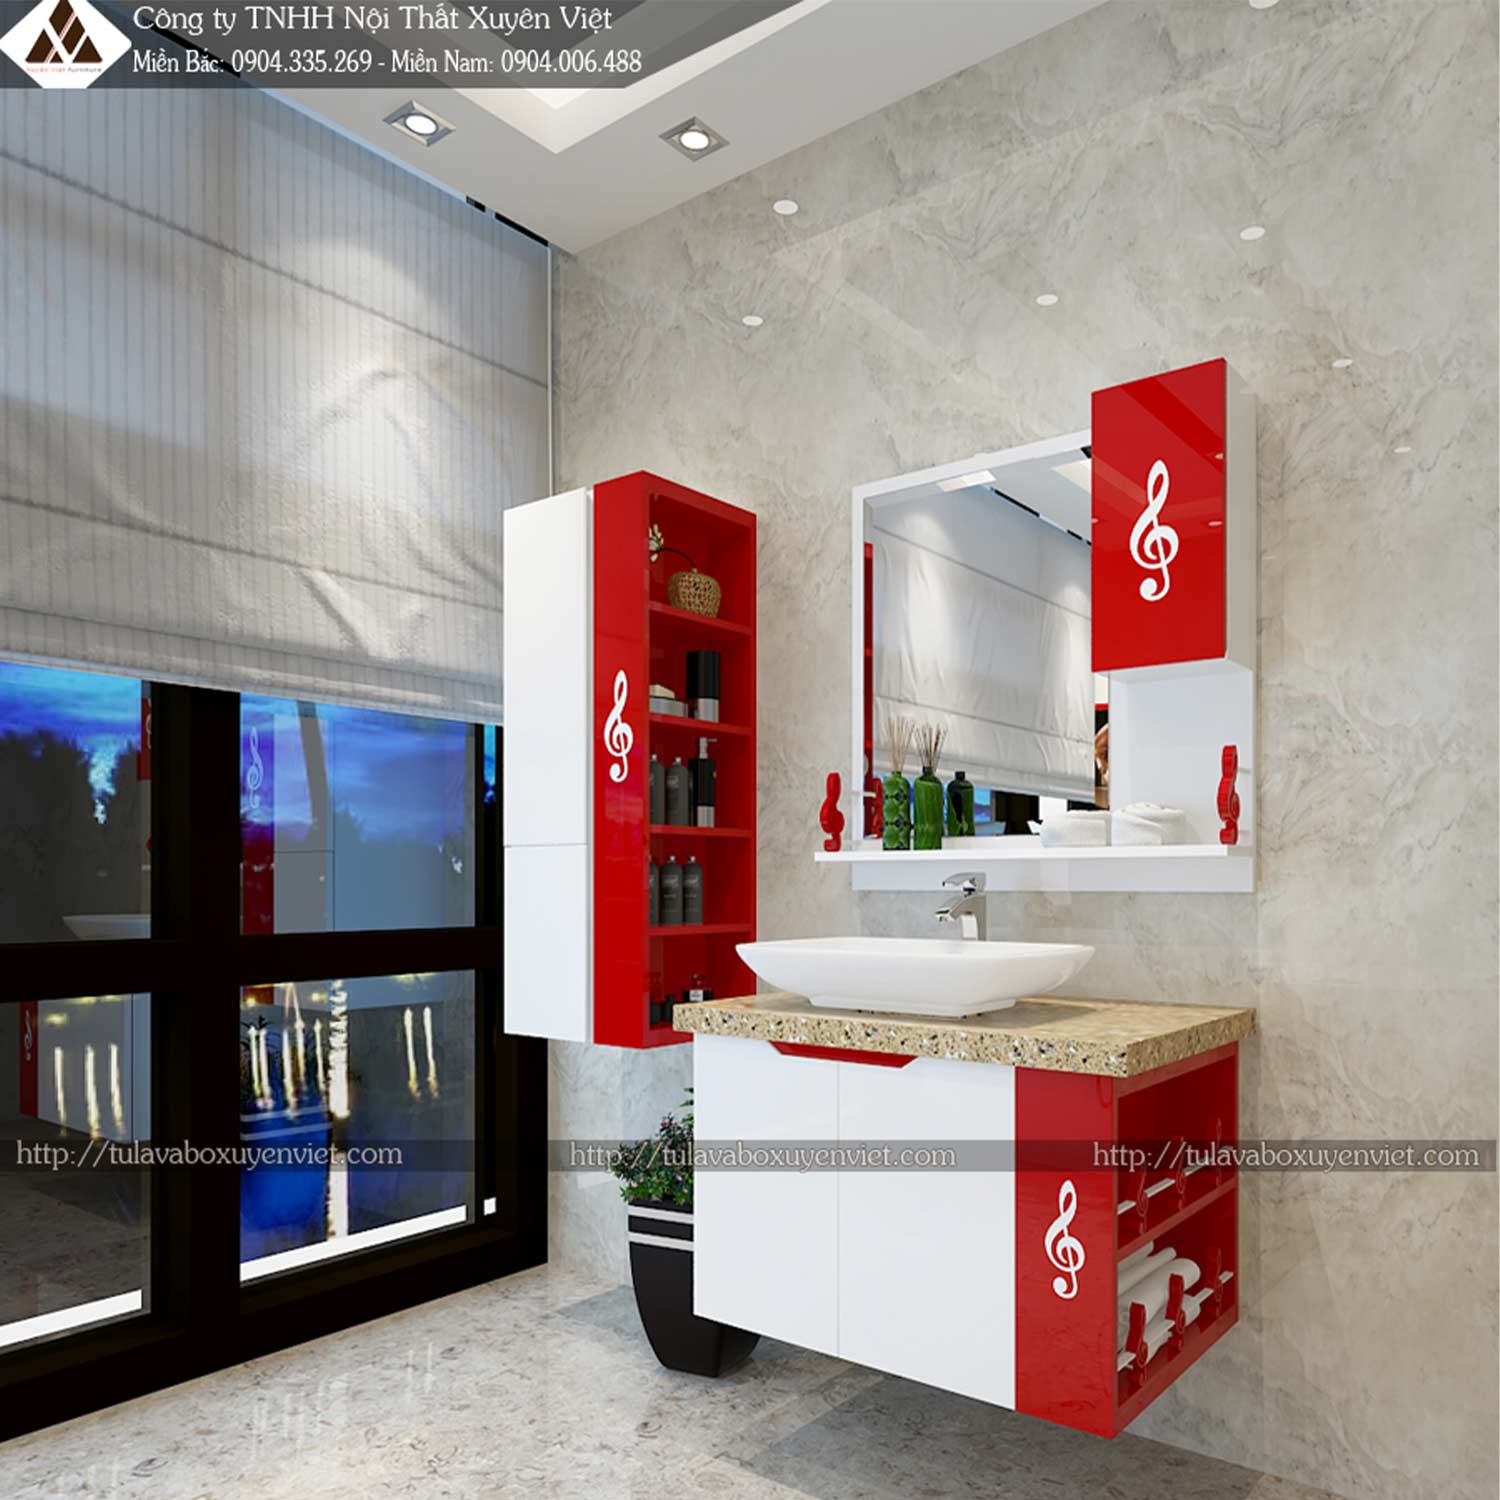 Bộ tủ chậu lavabo LBK214 tông đỏ đầy quyền lực được đặt bán sẵn tại Showroom Xuyên Việt